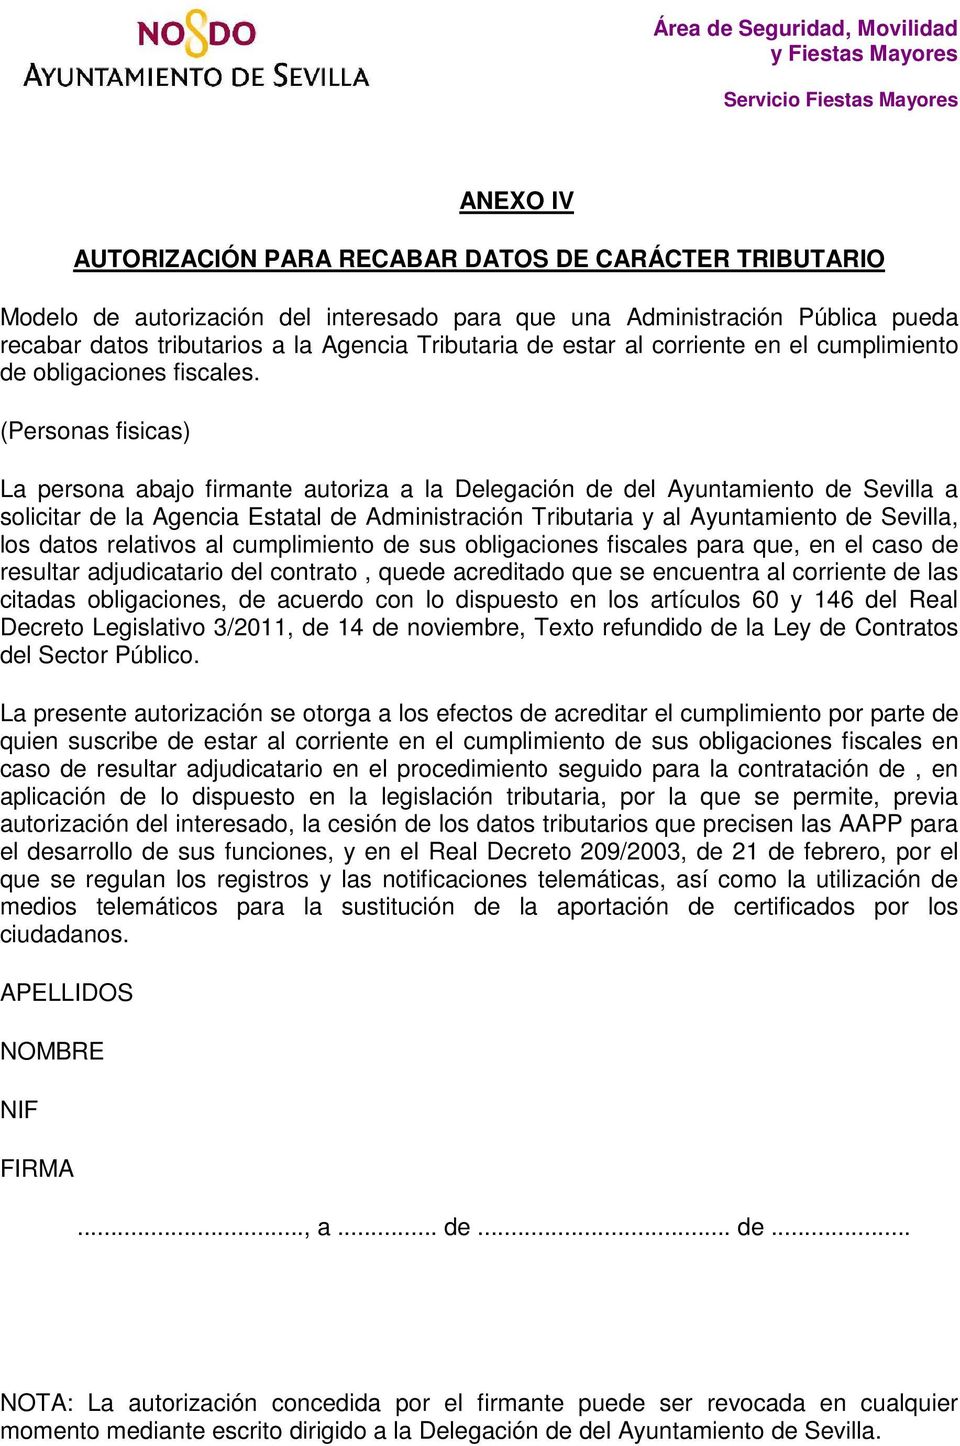 (Personas fisicas) La persona abajo firmante autoriza a la Delegación de del Ayuntamiento de Sevilla a solicitar de la Agencia Estatal de Administración Tributaria y al Ayuntamiento de Sevilla, los